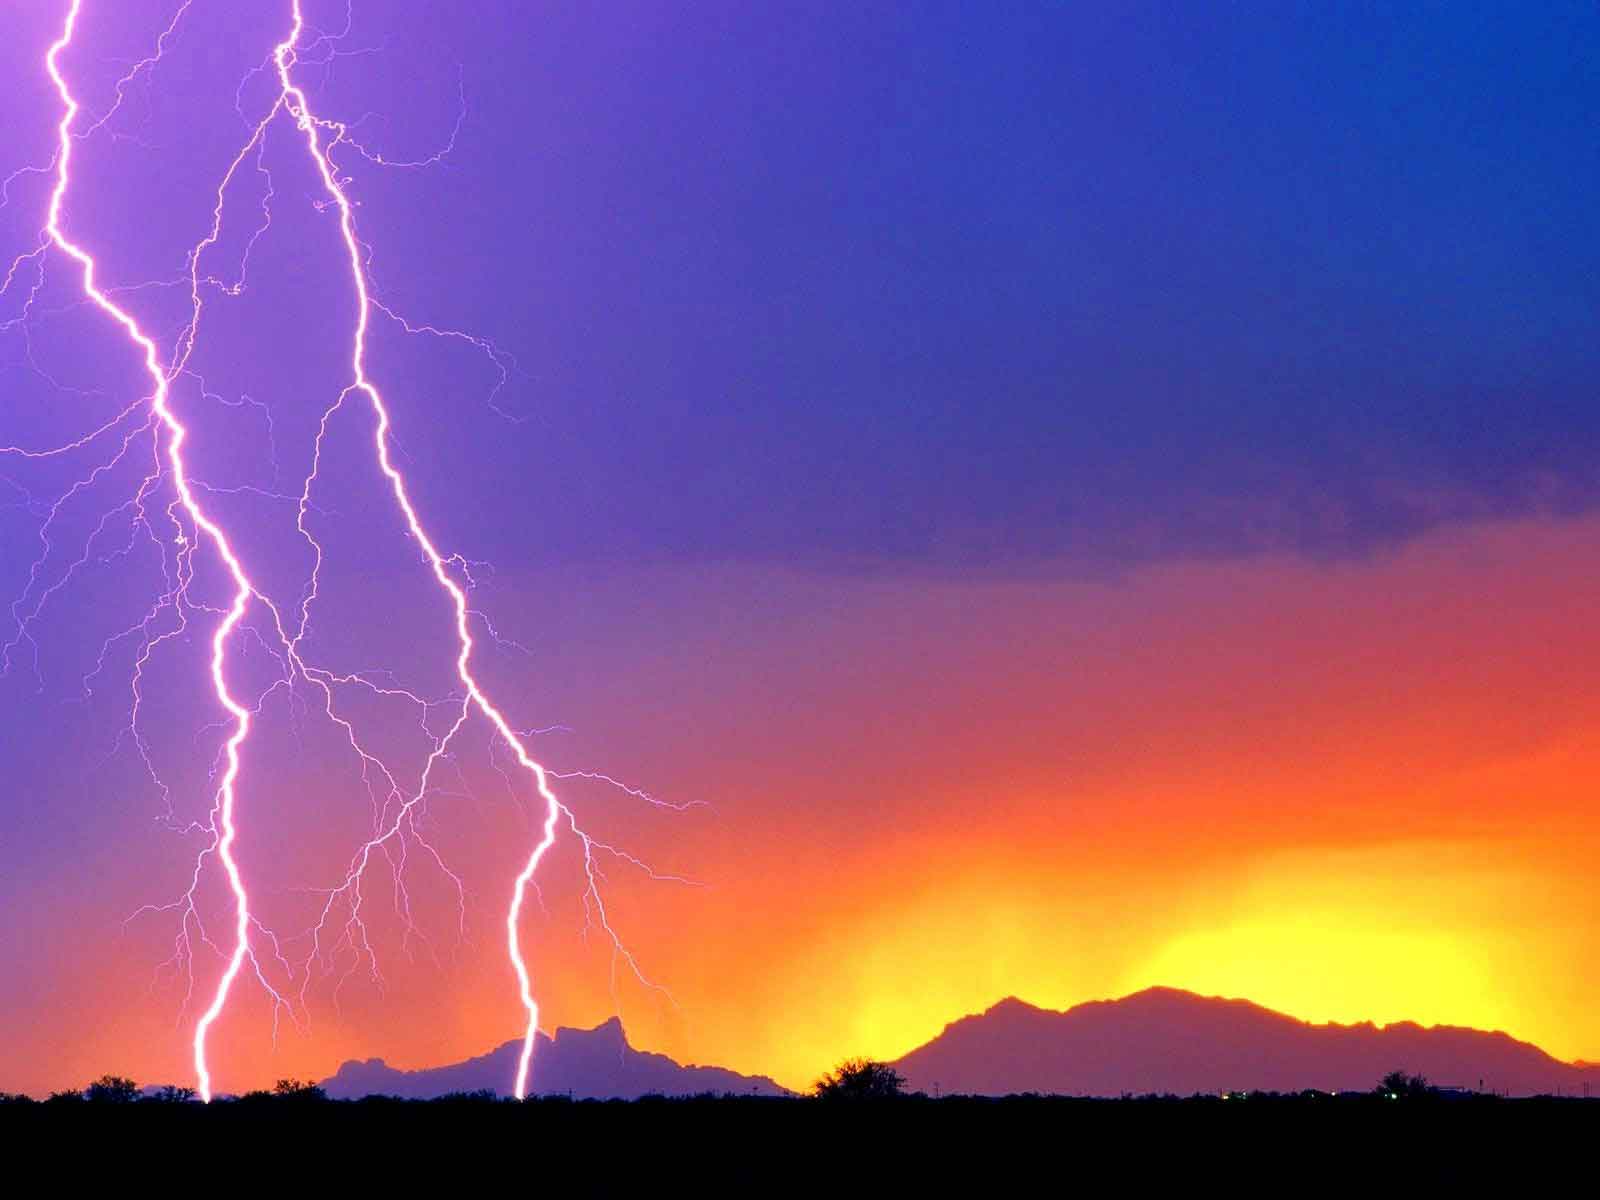 Free Download Lightning Storm Backgrounds